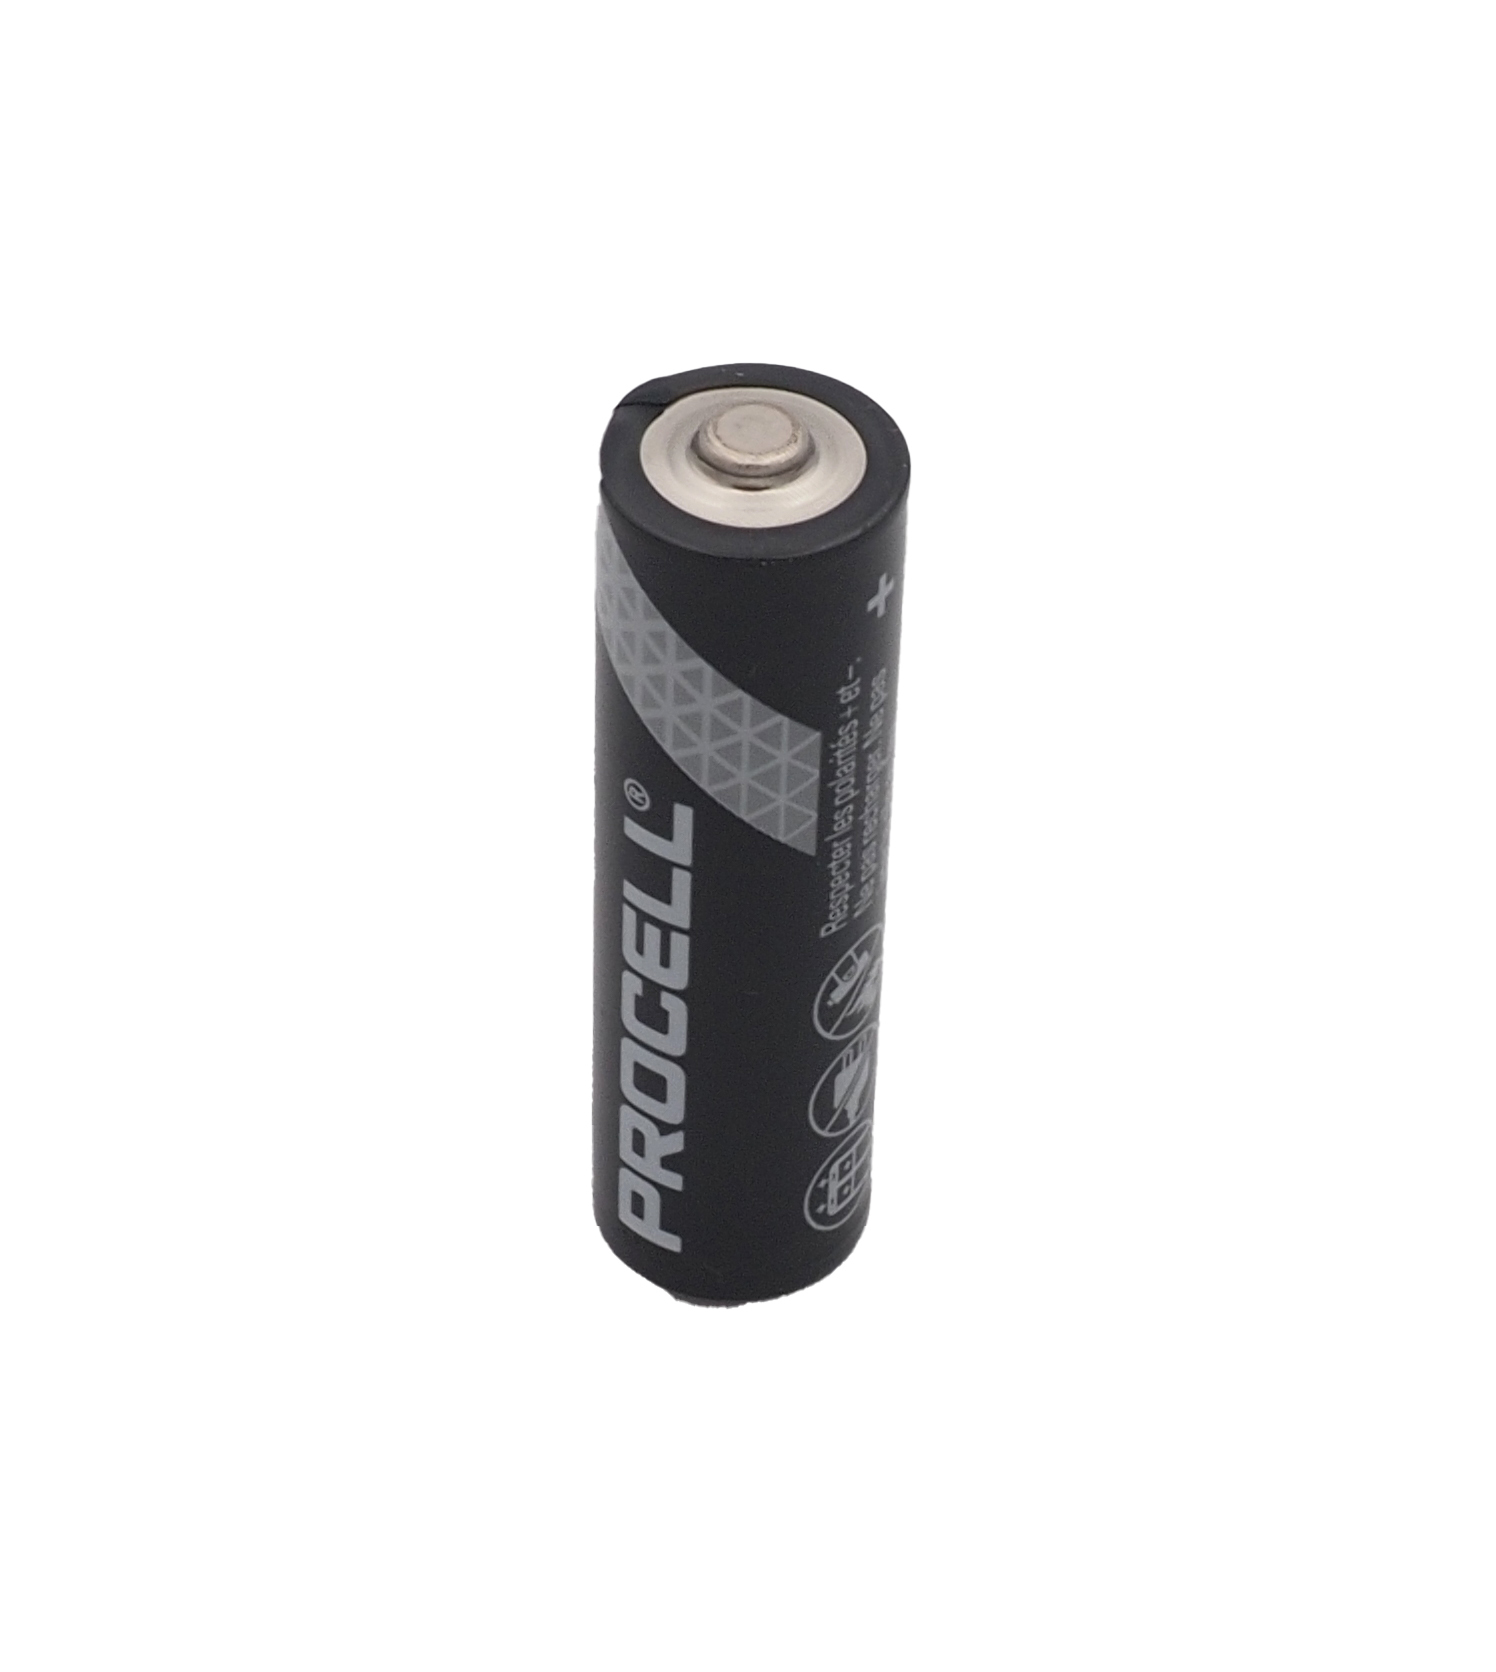 Batterie 1,5 Volt LR6 Mignon Duracell PC1500